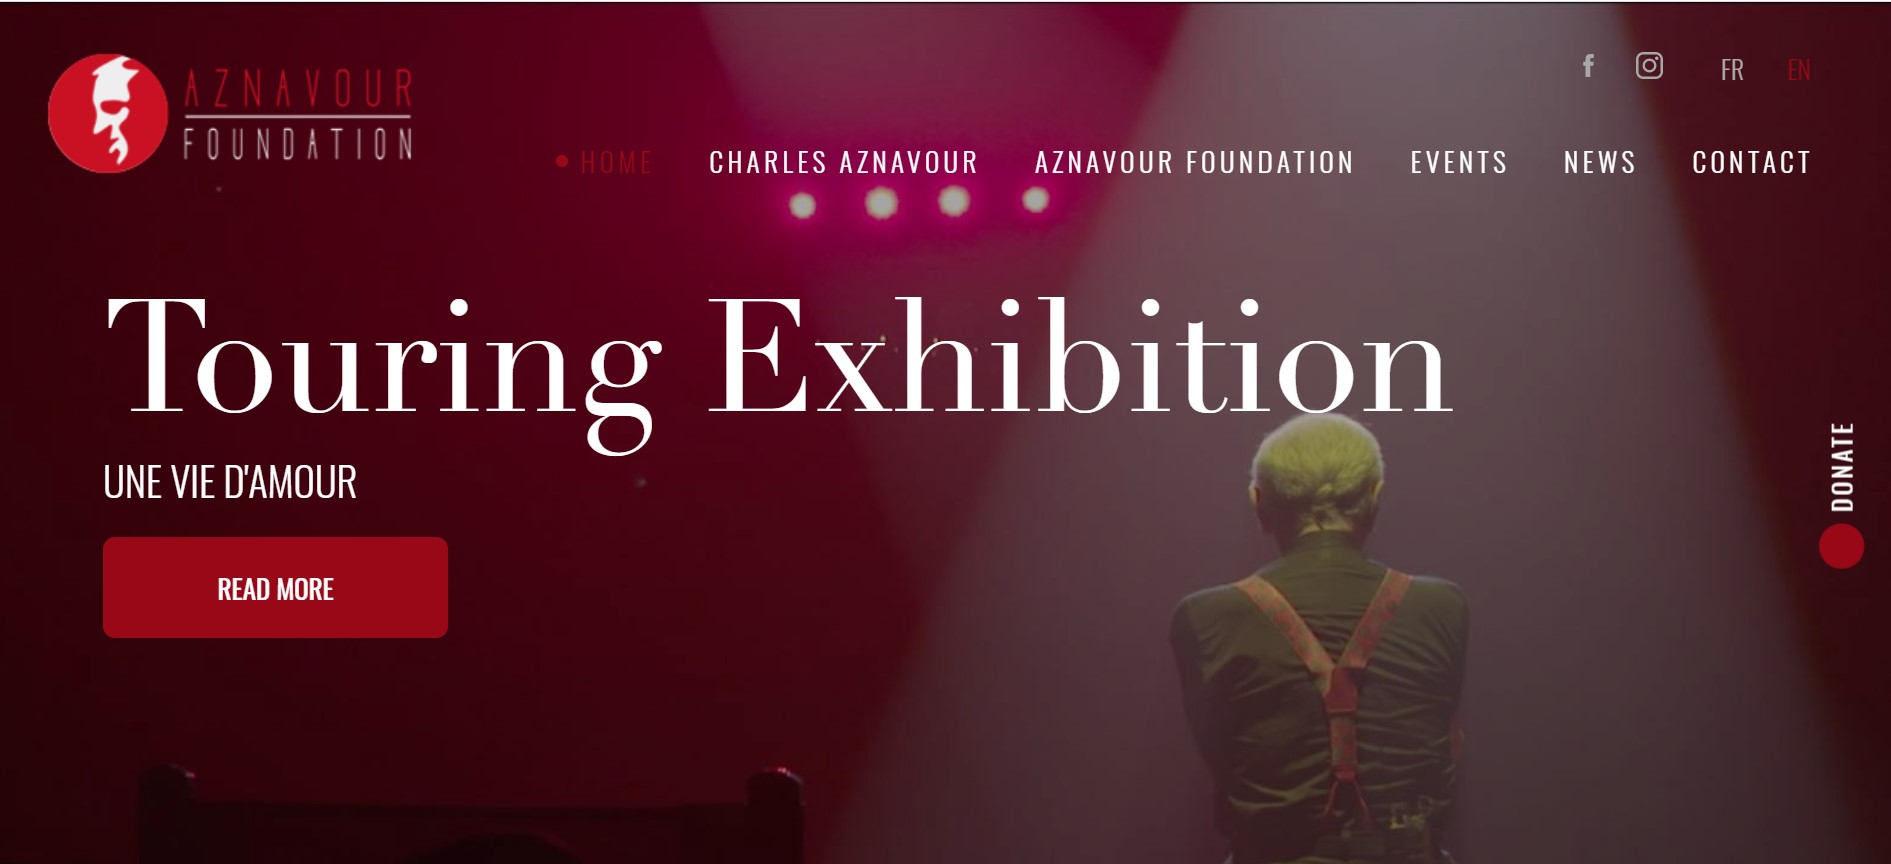 Création de site Internet en anglais pour une oeuvre caritative, la Fondation Charles Aznavour